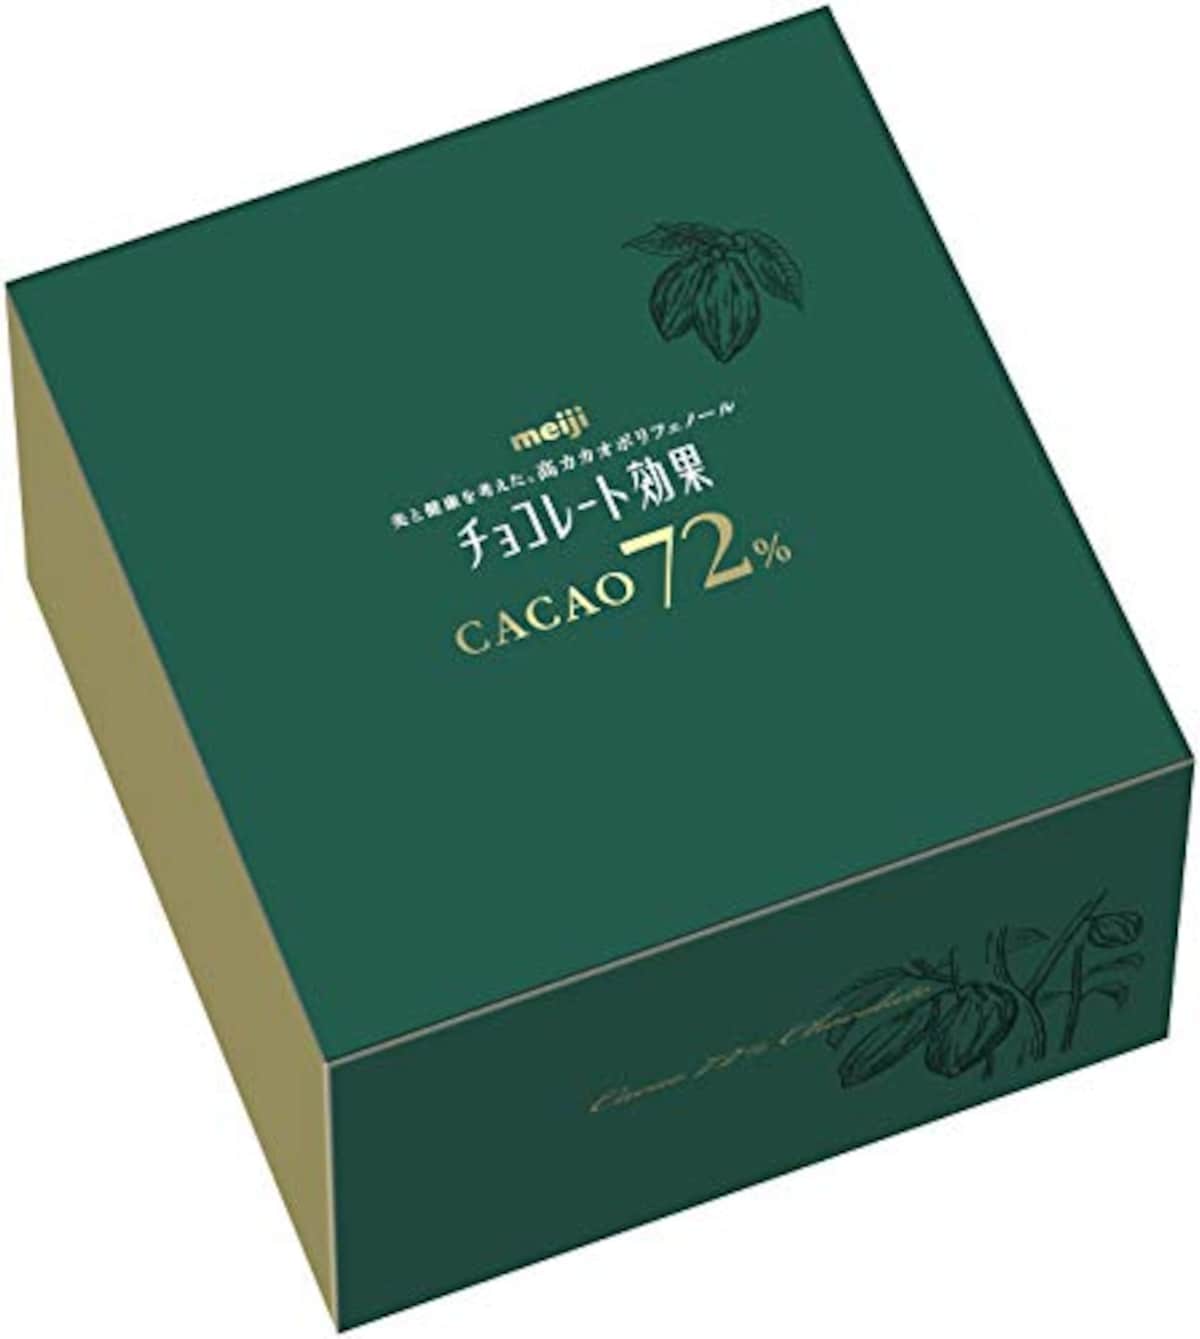 チョコレート効果 カカオ72% 大容量ボックス 1kg